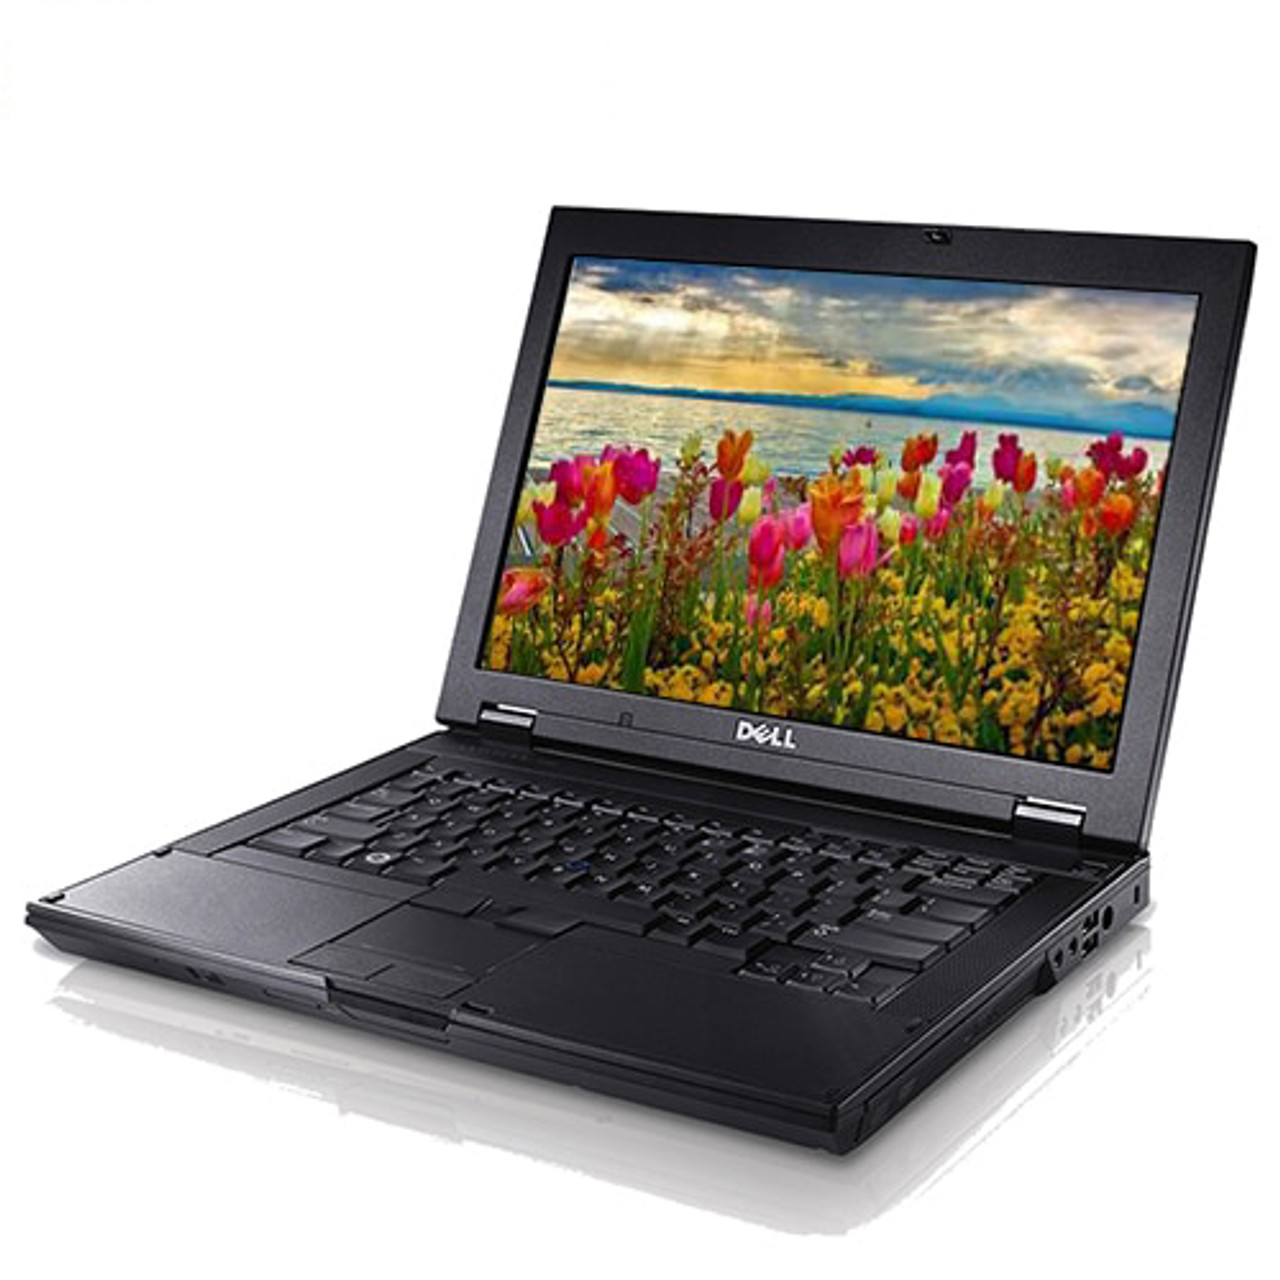 Dell Laptop Latitude E Series Windows 10 Core 2 Duo 4GB RAM DVD WIFI  Computer